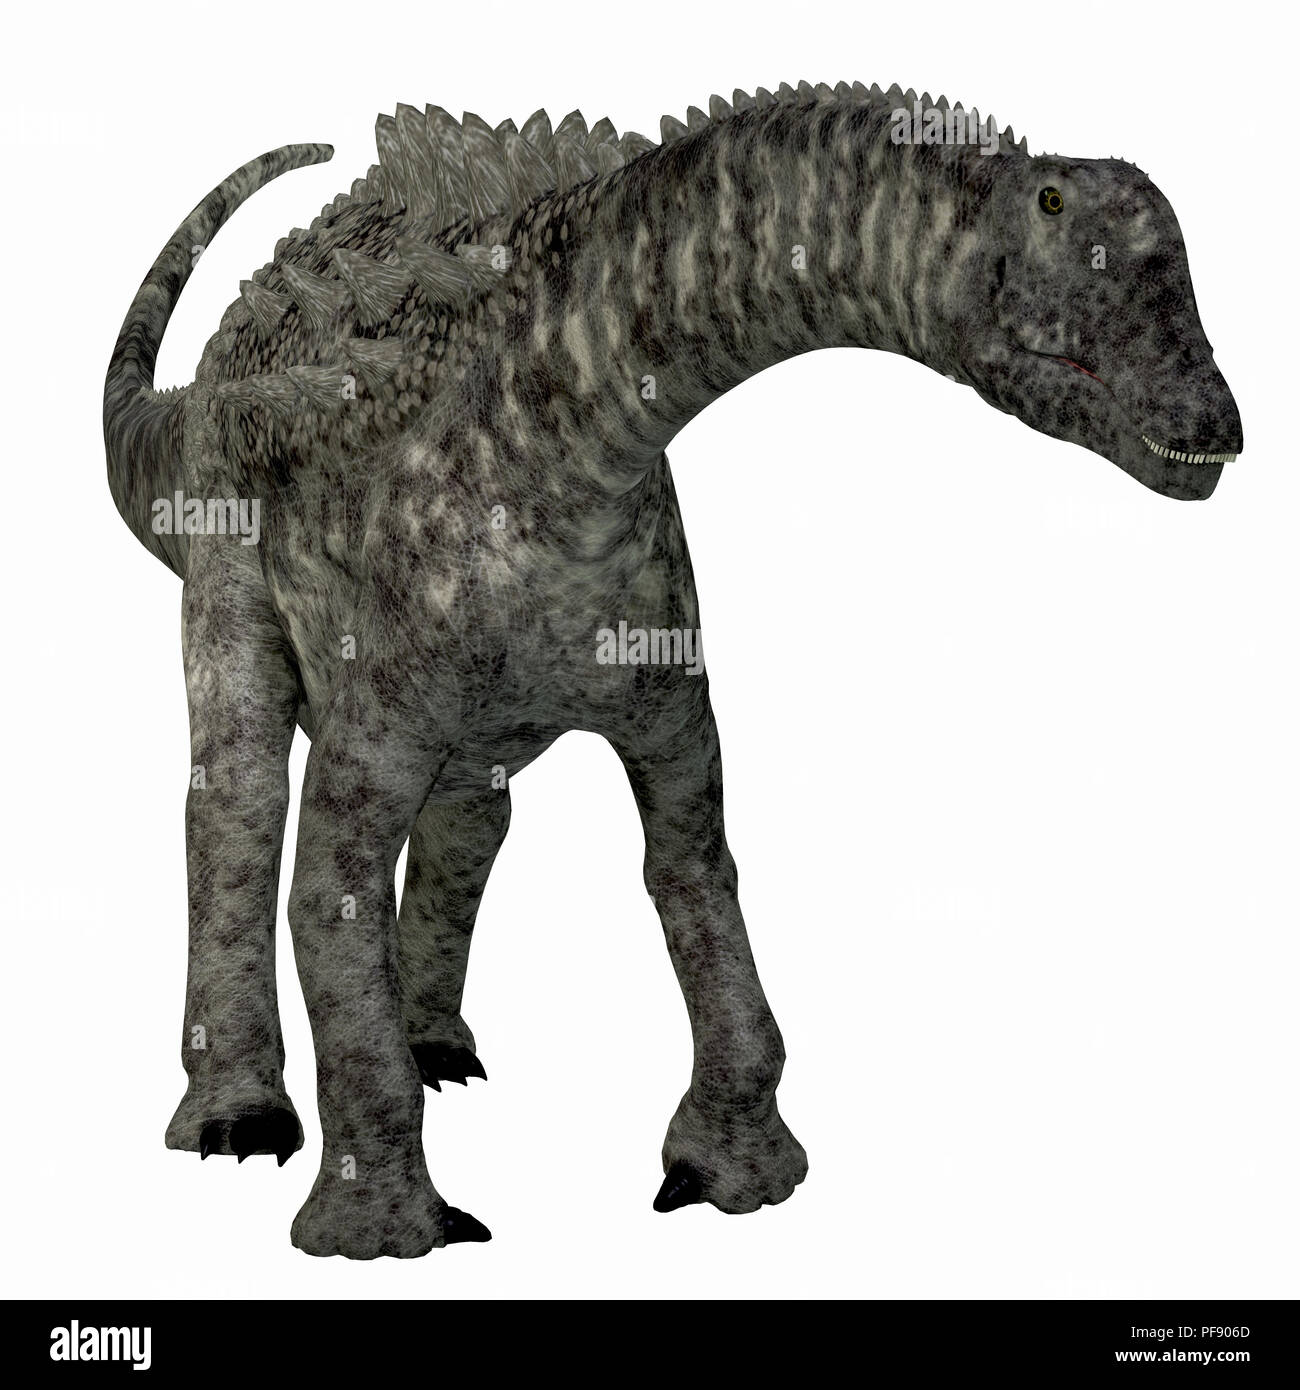 Ampelosaurus Dinosaurier - Ampelosaurus war ein Pflanzenfressenden sauropoden Dinosaurier, die in Europa während der Kreidezeit lebten. Stockfoto